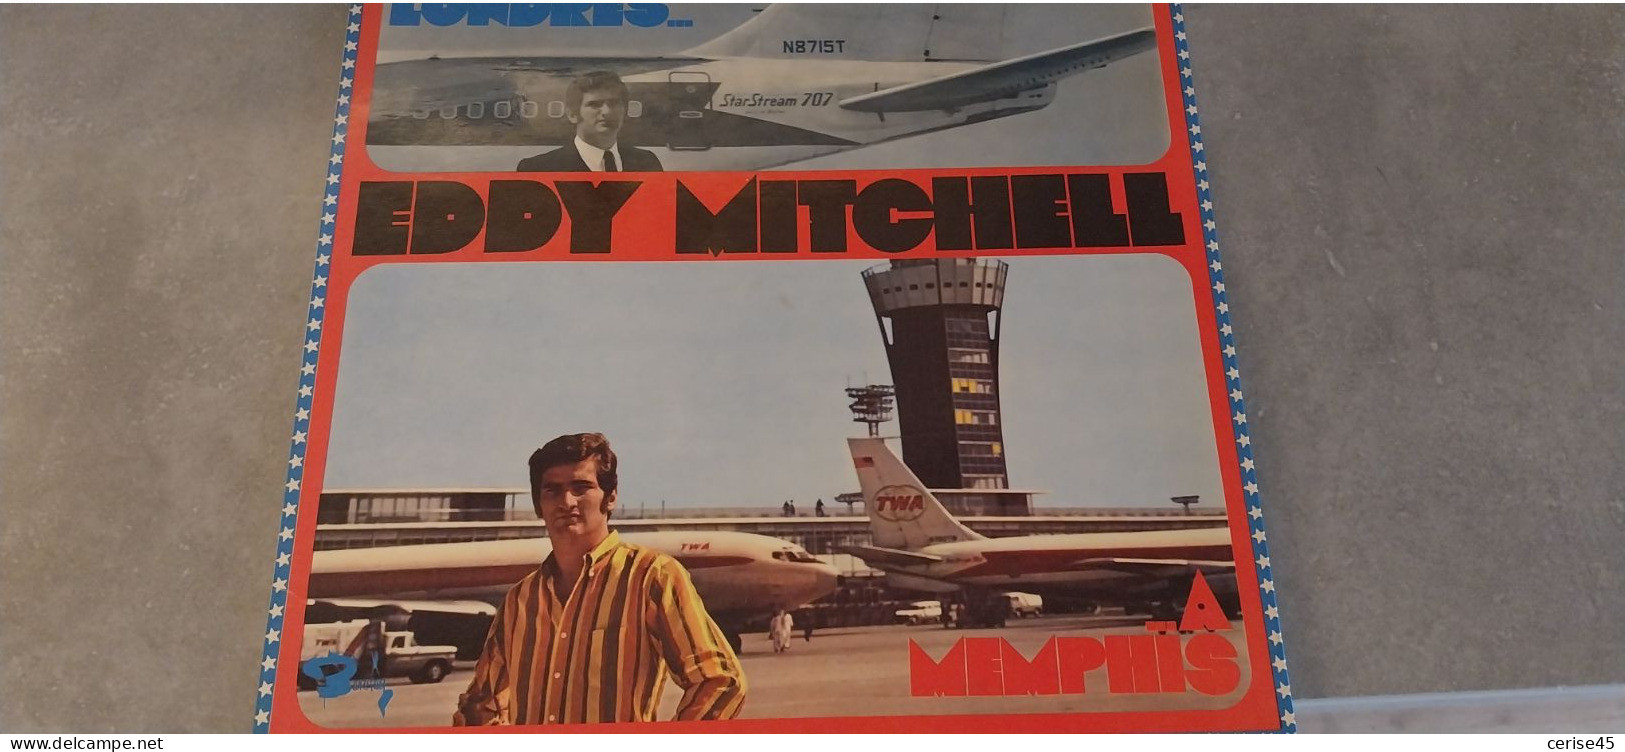 33 TOURS EDDY MITCHELL DE LONDRES A MENPHIS  ENREGISTRE EN 1967 - Altri - Francese